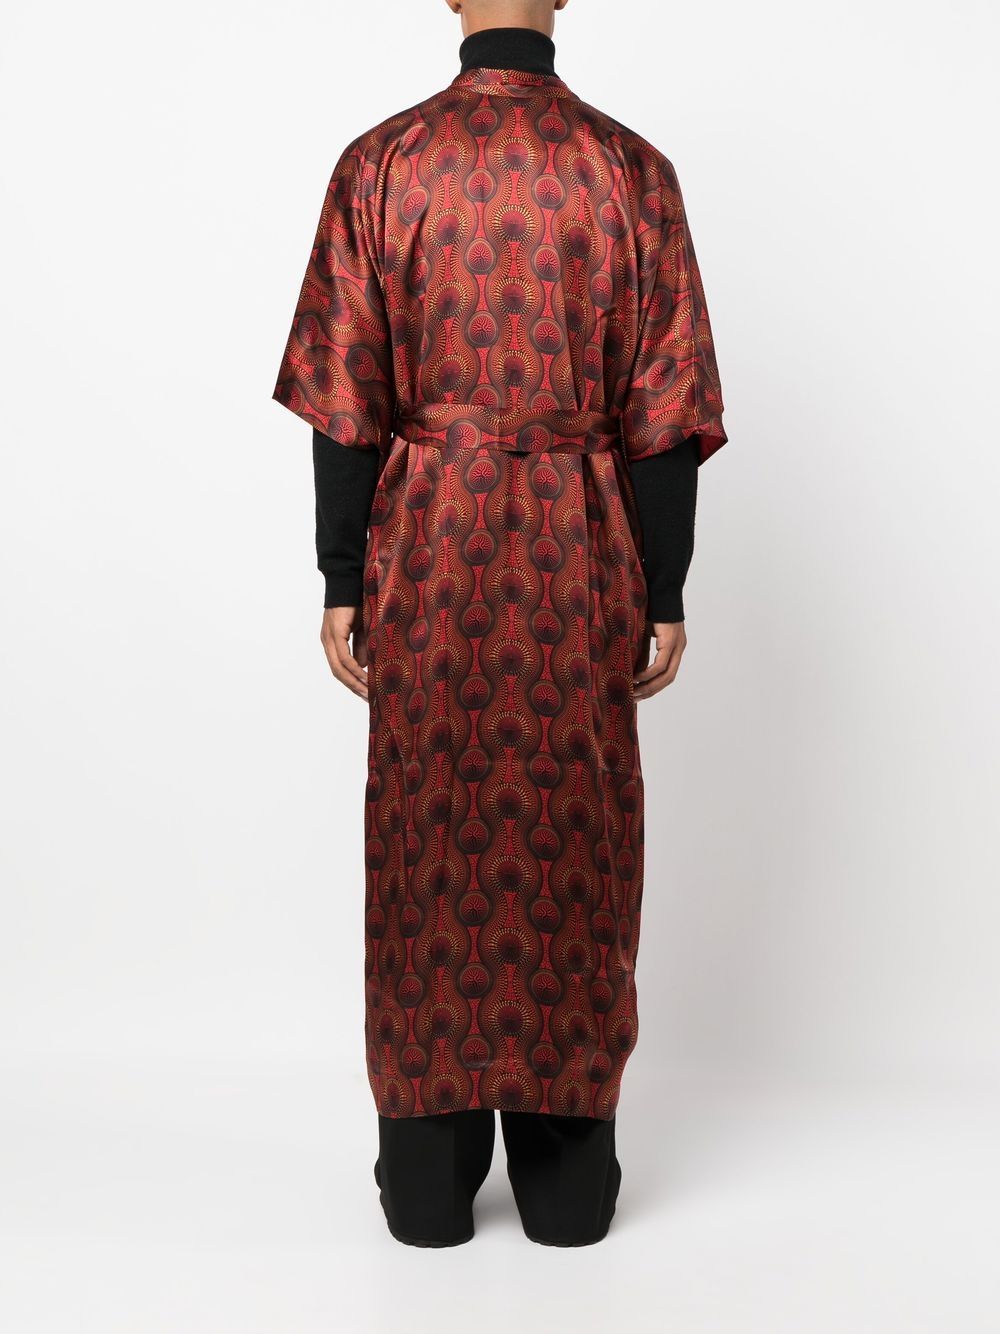 Ozwald boateng OZWALD BOATENG- Printed Silk Long Kimono